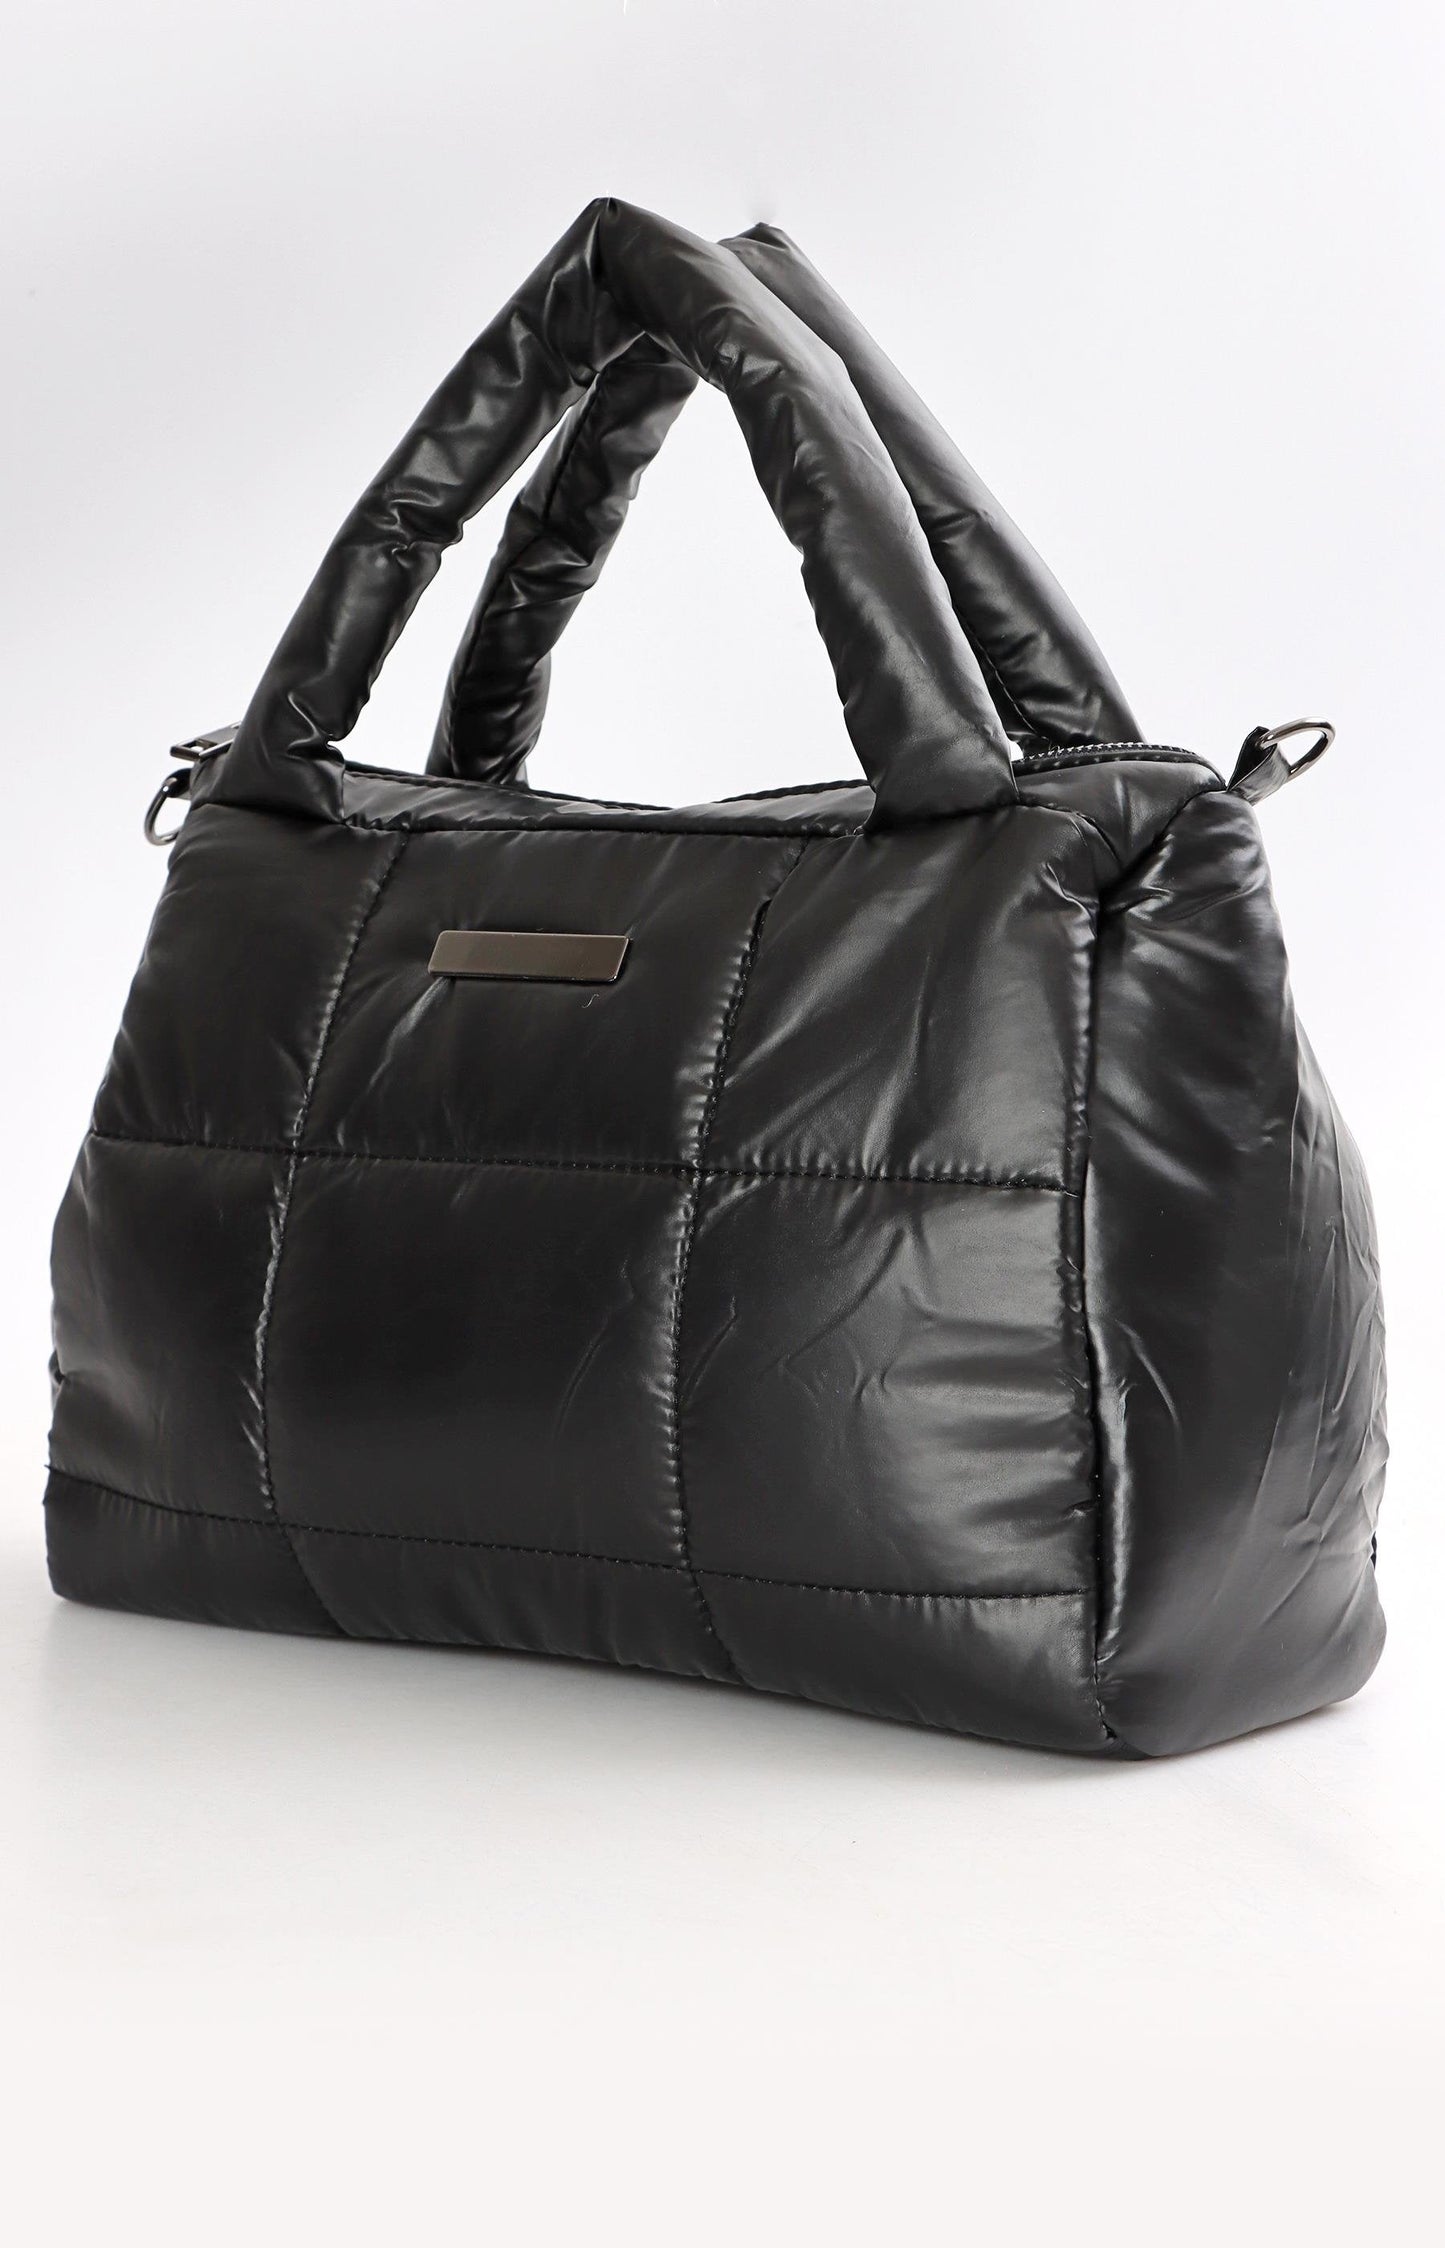 Ladies Quilted Bag - Black